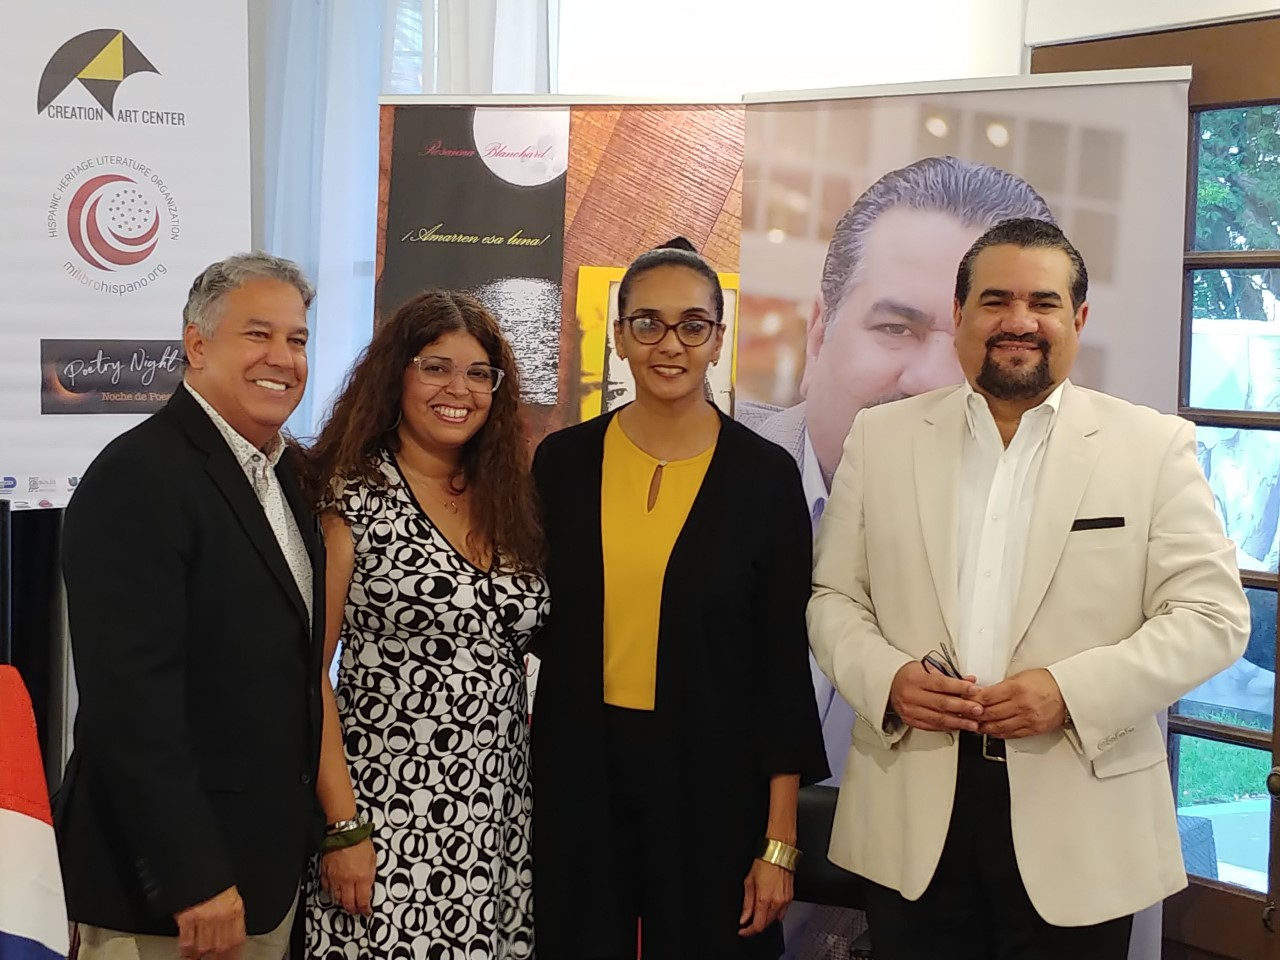 Dedican a República Dominicana “Noche de Poesía” del Miami Hispanic Cultural Arts Center